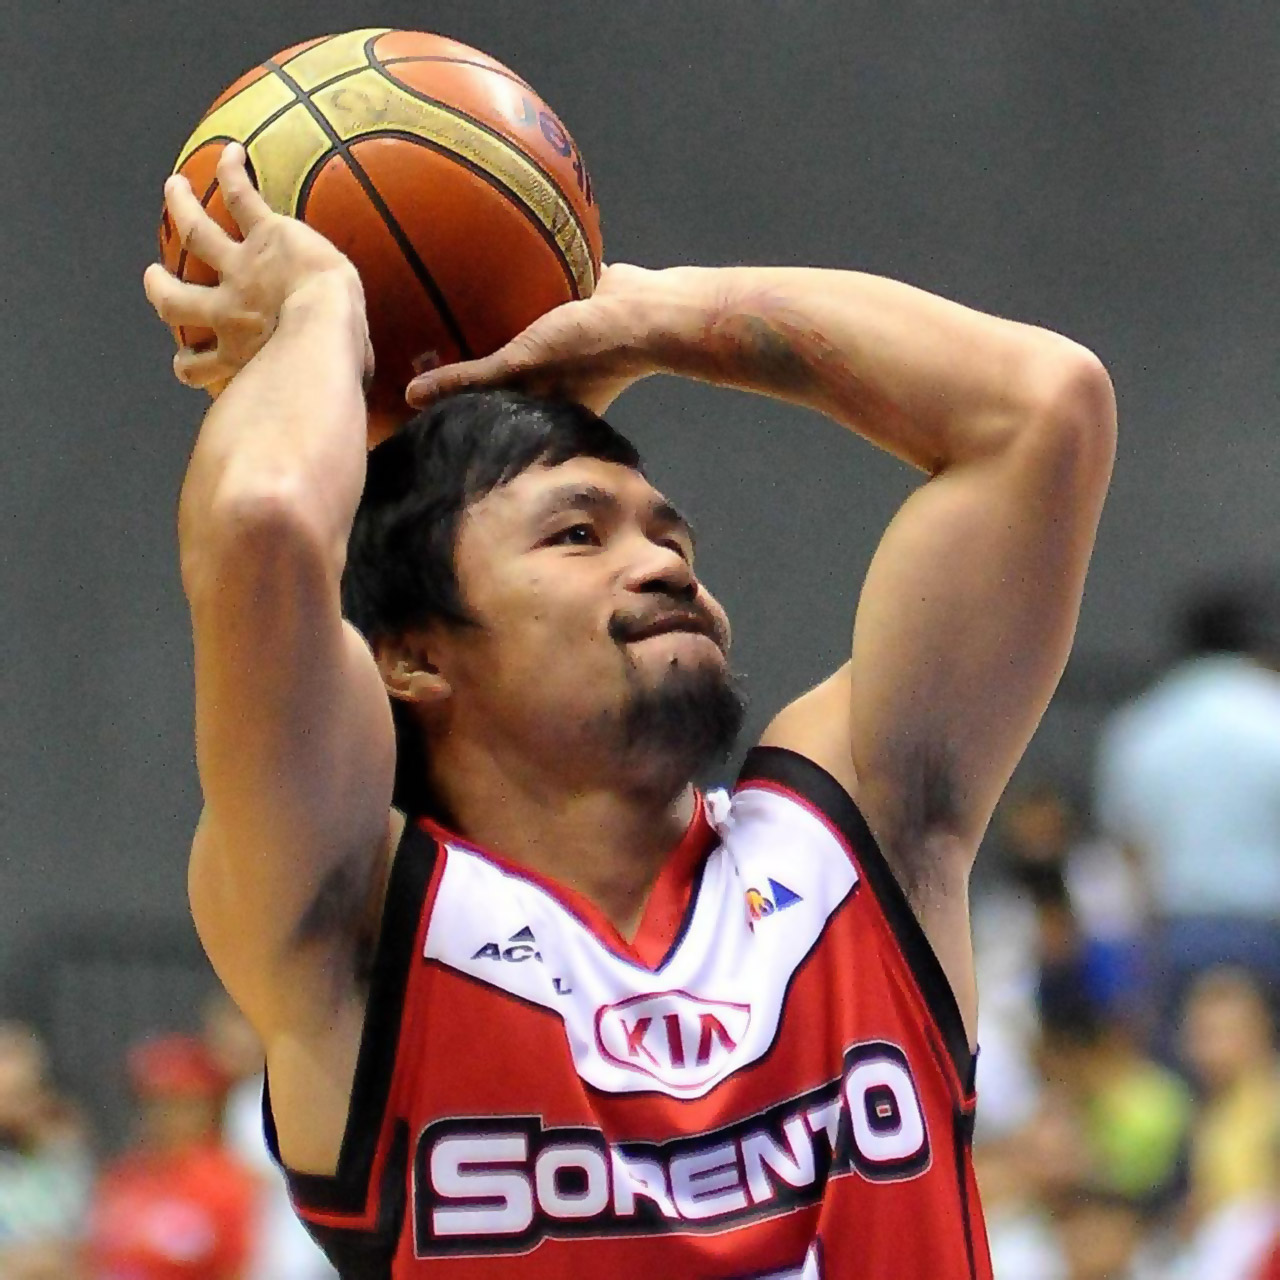 Manny Pacquiao Prepares to shoot the basketball for Kia Sorento